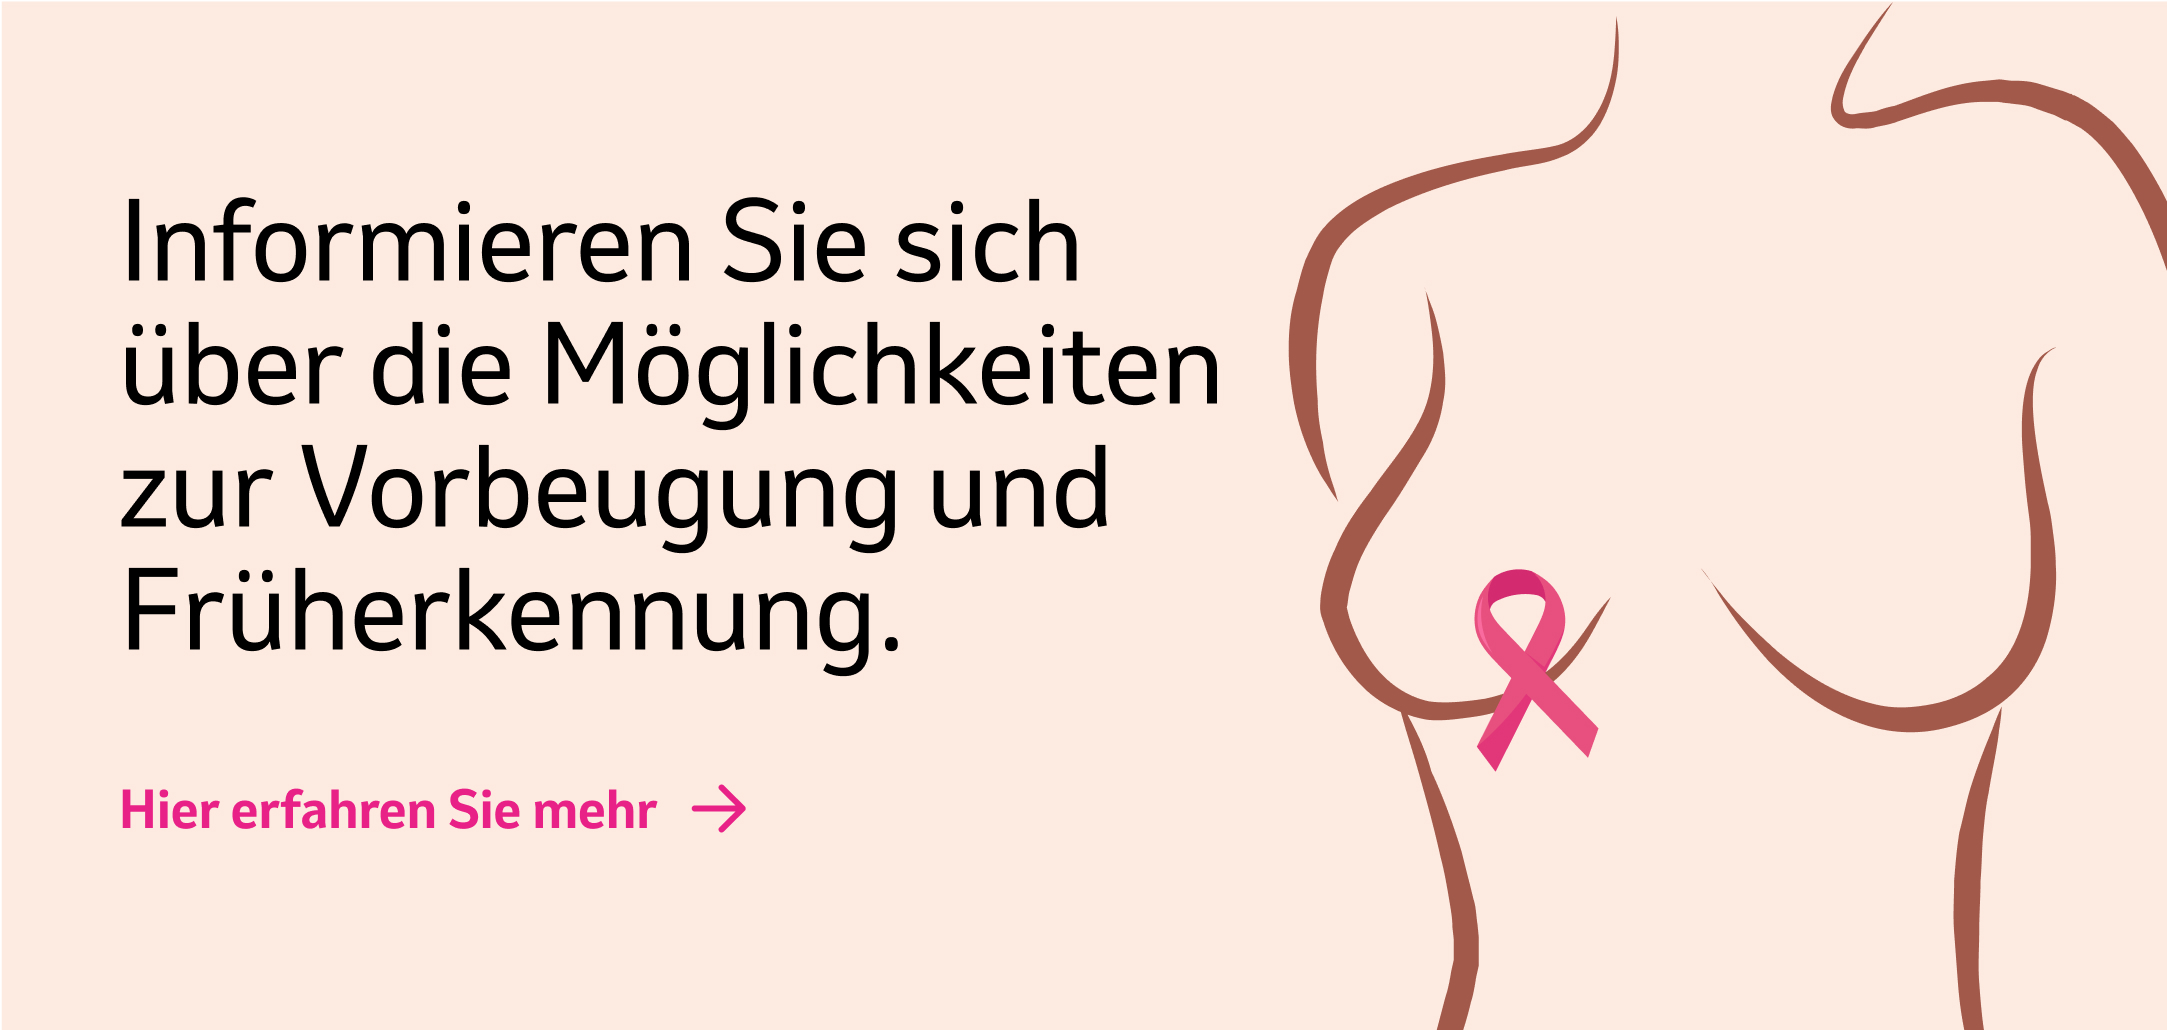 Banner "Informieren Sie sich über die Möglichkeiten der Brustkrebsvorbeugung und Früherkennung."